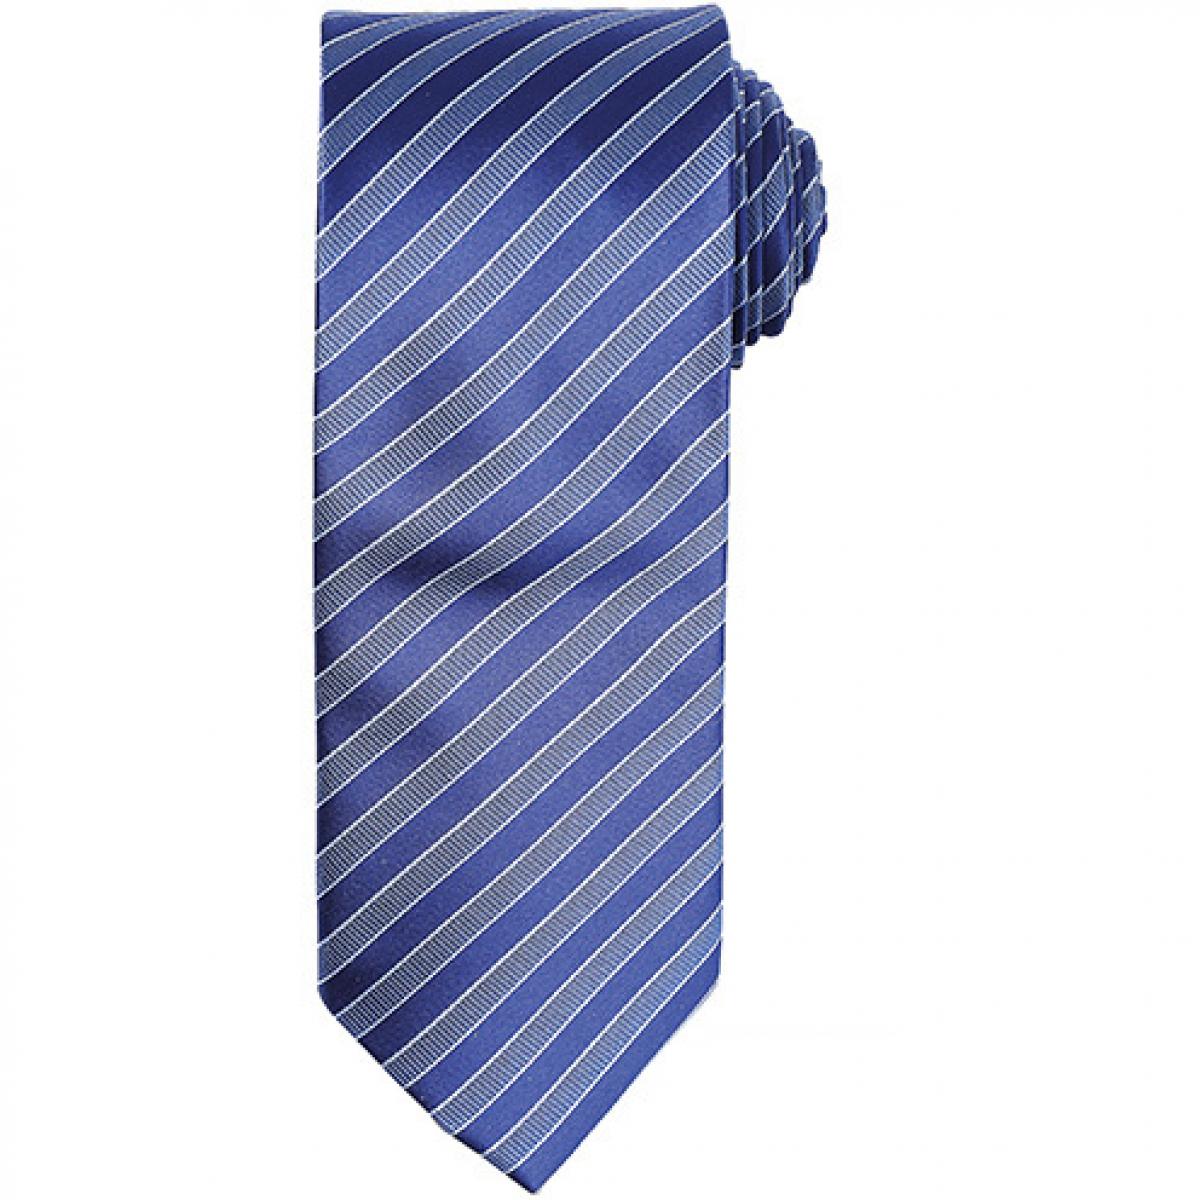 Hersteller: Premier Workwear Herstellernummer: PR782 Artikelbezeichnung: Double Stripe Tie / Breite 3" / 7,5 cm / Länge 57" / 144 cm Farbe: Navy/Blue